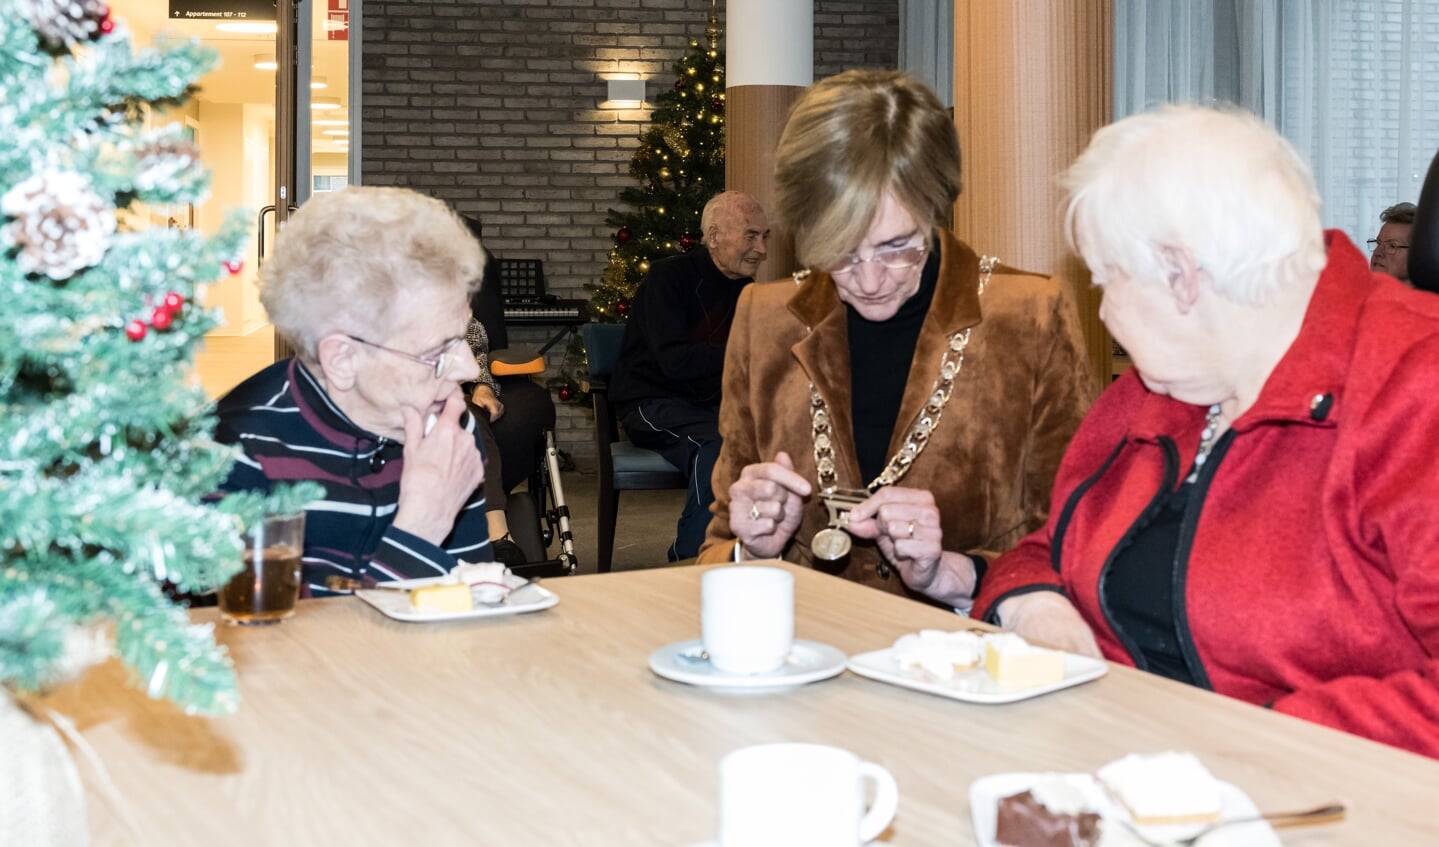 Burgemeester Bronsvoort legt uit waar de tekens op haar ambtsketting voor staan aan de  dames Molleman en Hulshof. Foto: Janette van Egten